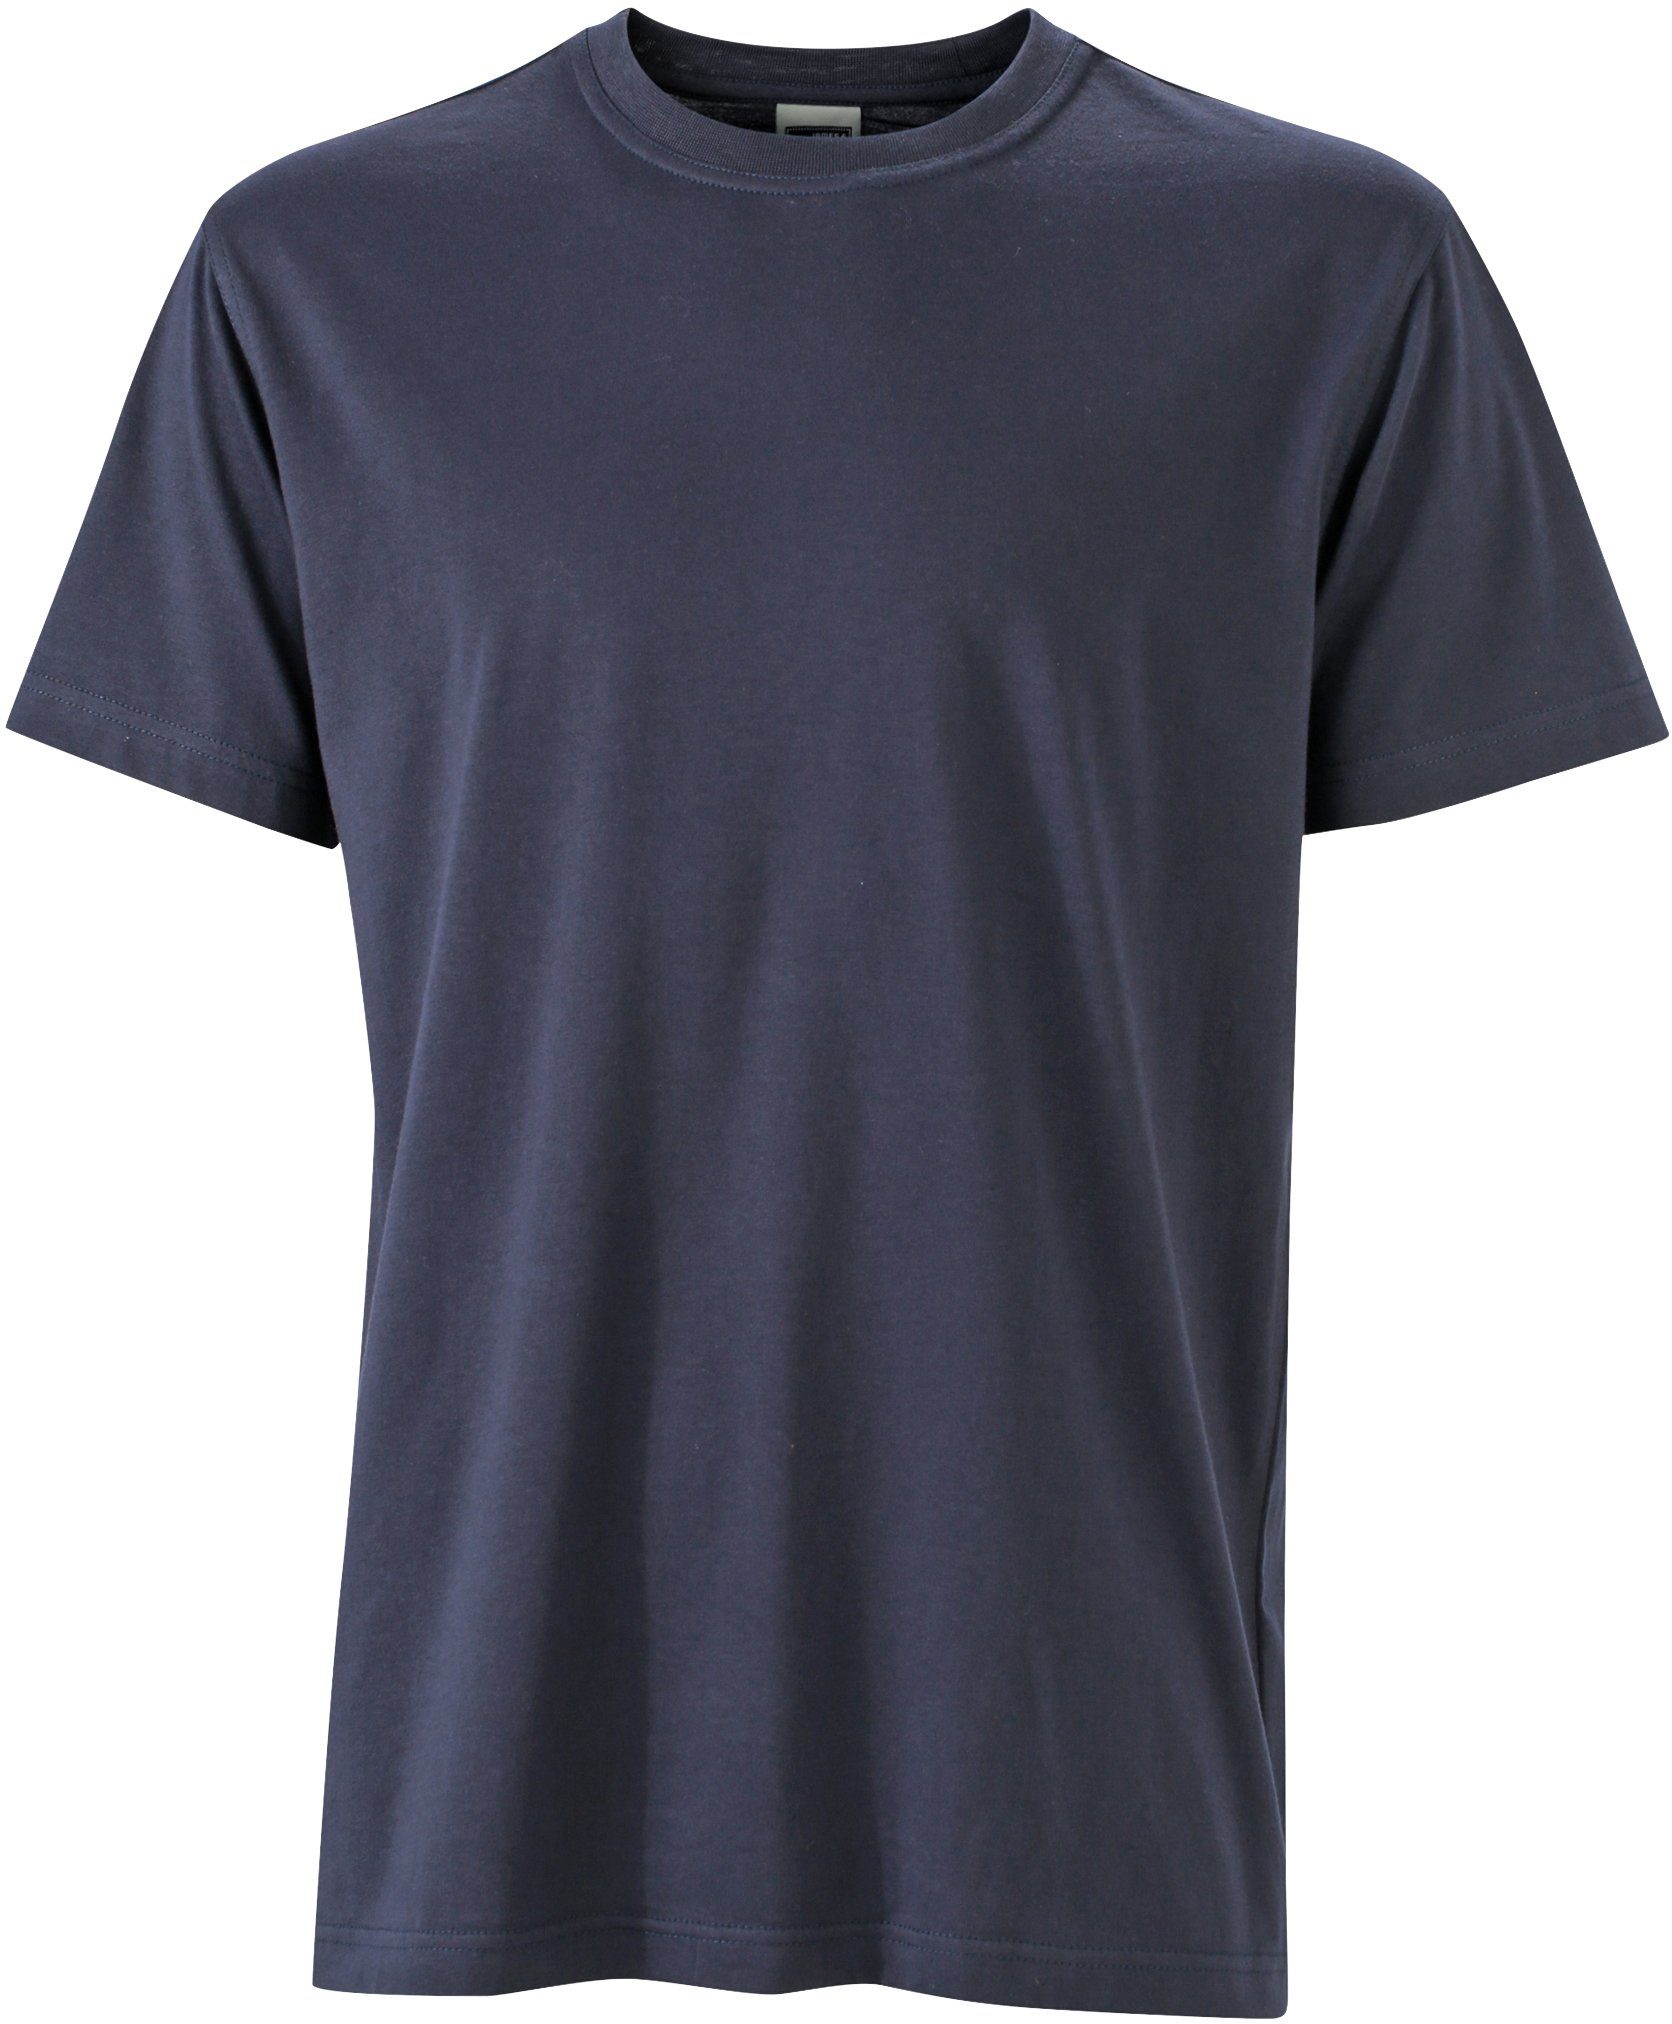 James & Nicholson T-Shirt Workwear T-Shirt FaS50838 auch in großen Größen Navy